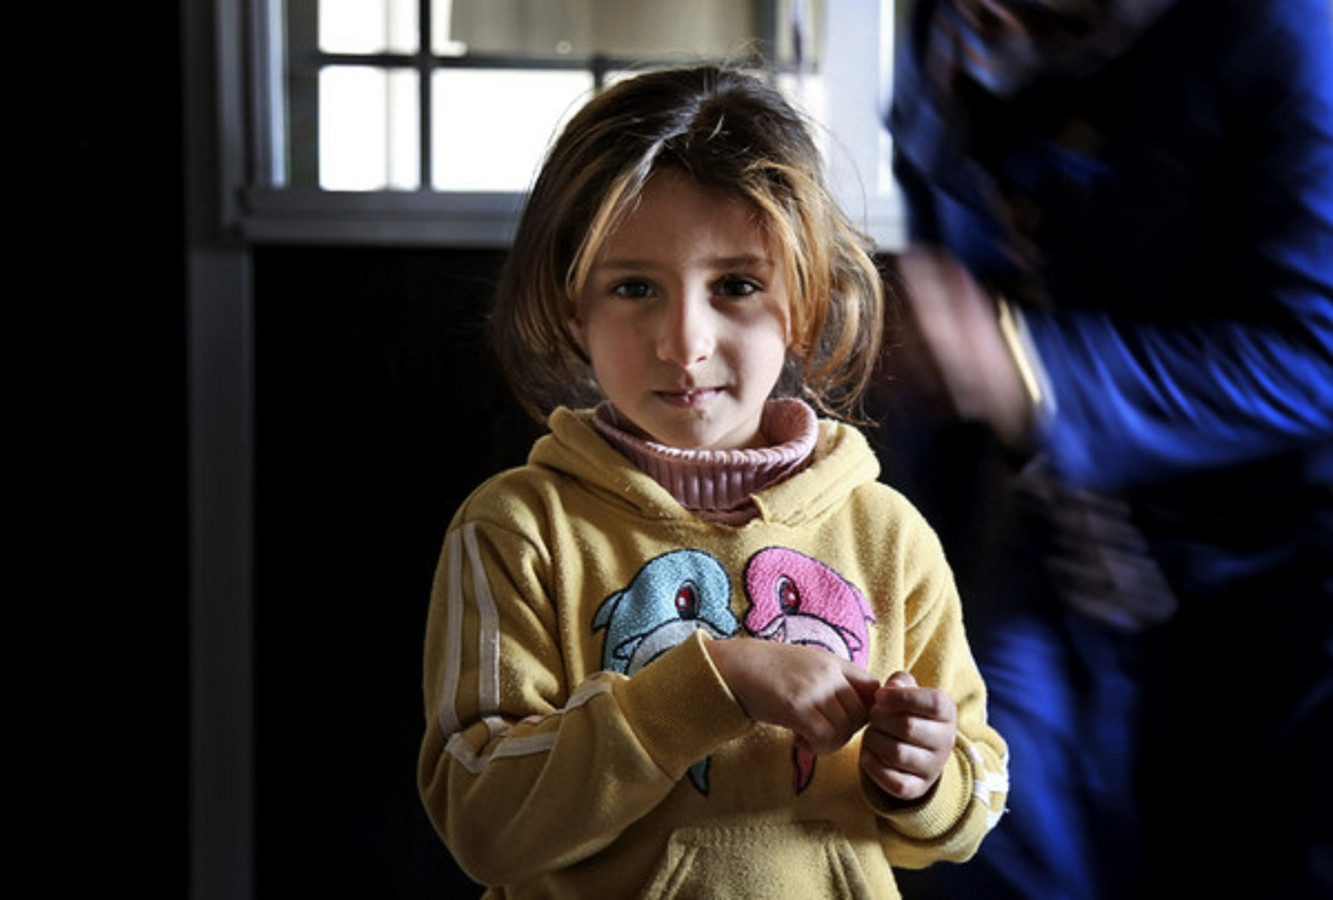 Yoghurt rietje toevoegen aan 5 kinderen van 5 jaar oud vertellen over 5 jaar oorlog in Syrië | Foto |  AD.nl